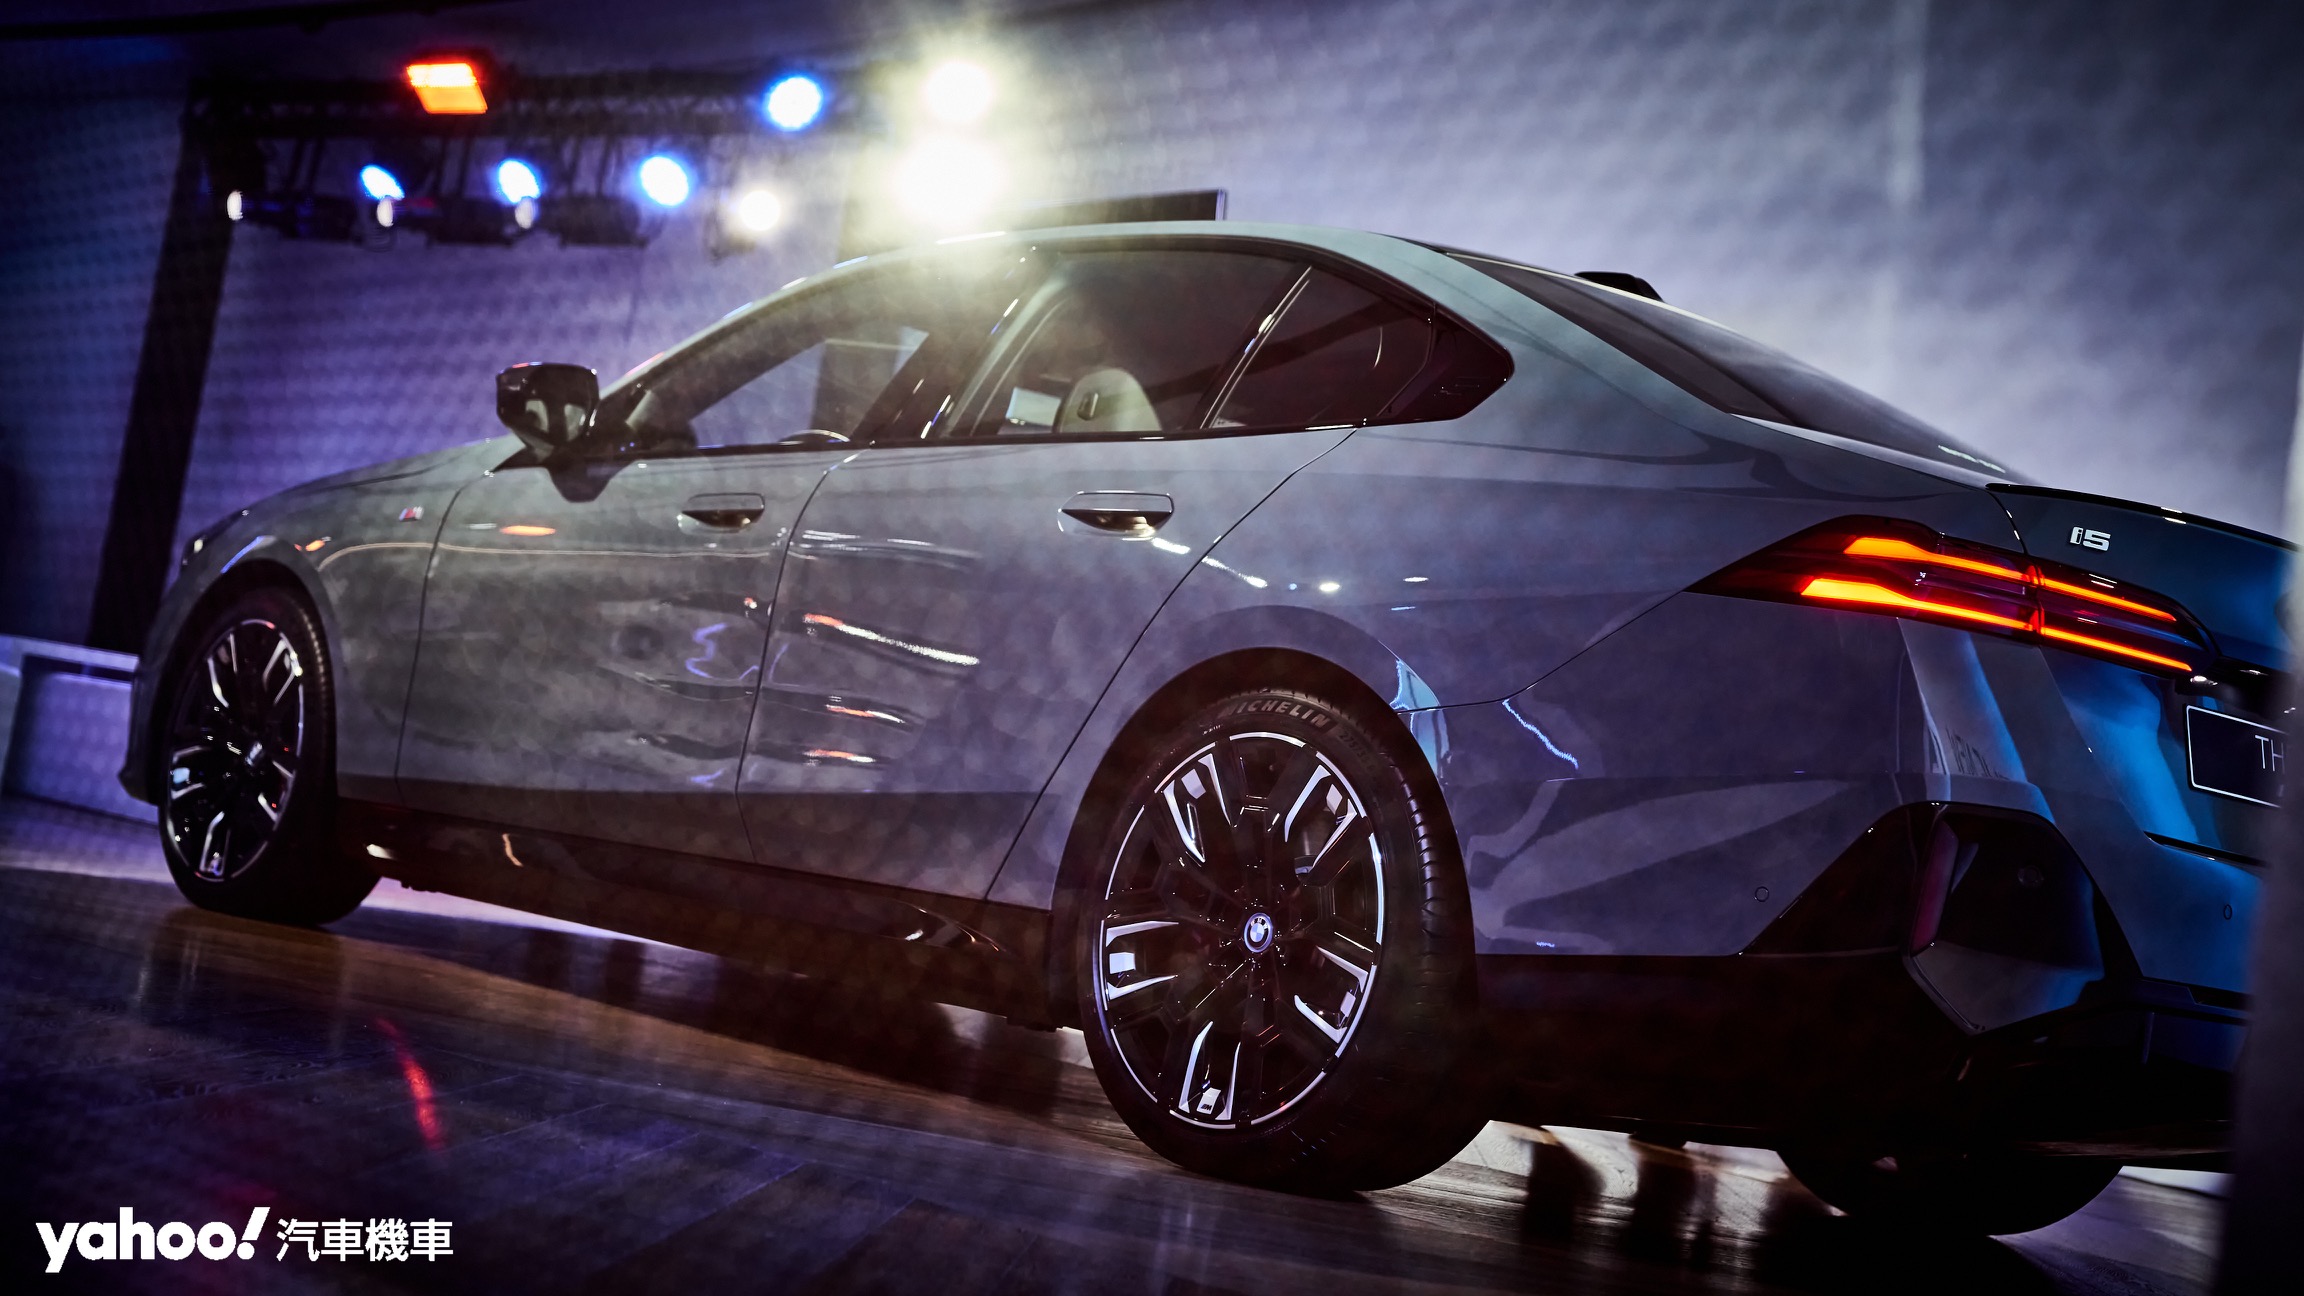 經典BMW Hofmeister Kink拐角、全新尾燈構型與大器方正的構型賦予全新i5車尾絕佳經典的視覺感。